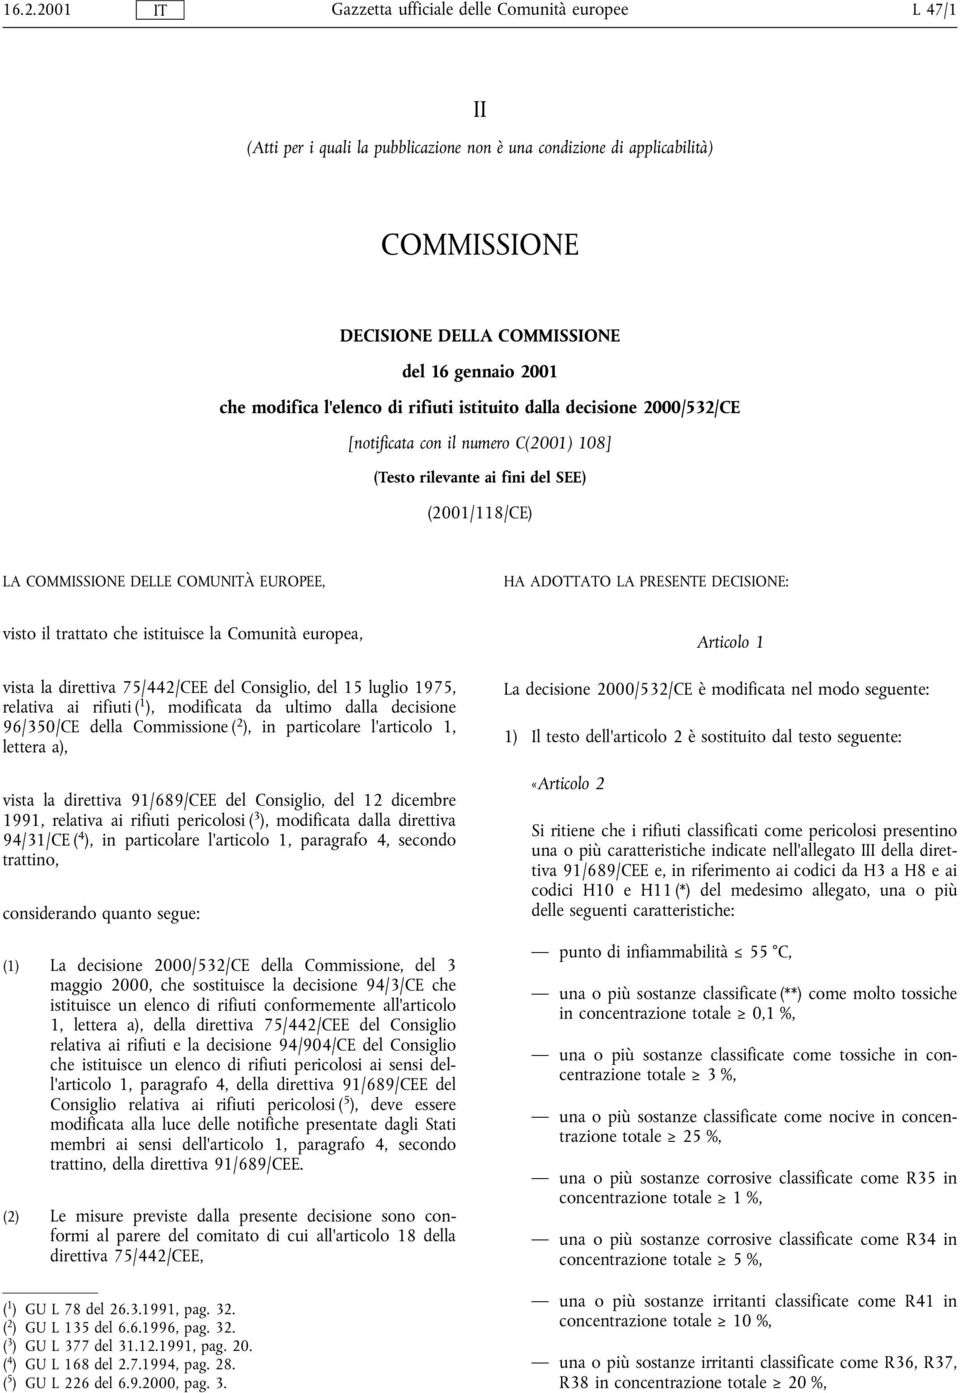 trattato che istituisce la Comunità europea, vista la direttiva 75/442/CEE del Consiglio, del 15 luglio 1975, relativa ai rifiuti ( 1 ), modificata da ultimo dalla decisione 96/350/CE della